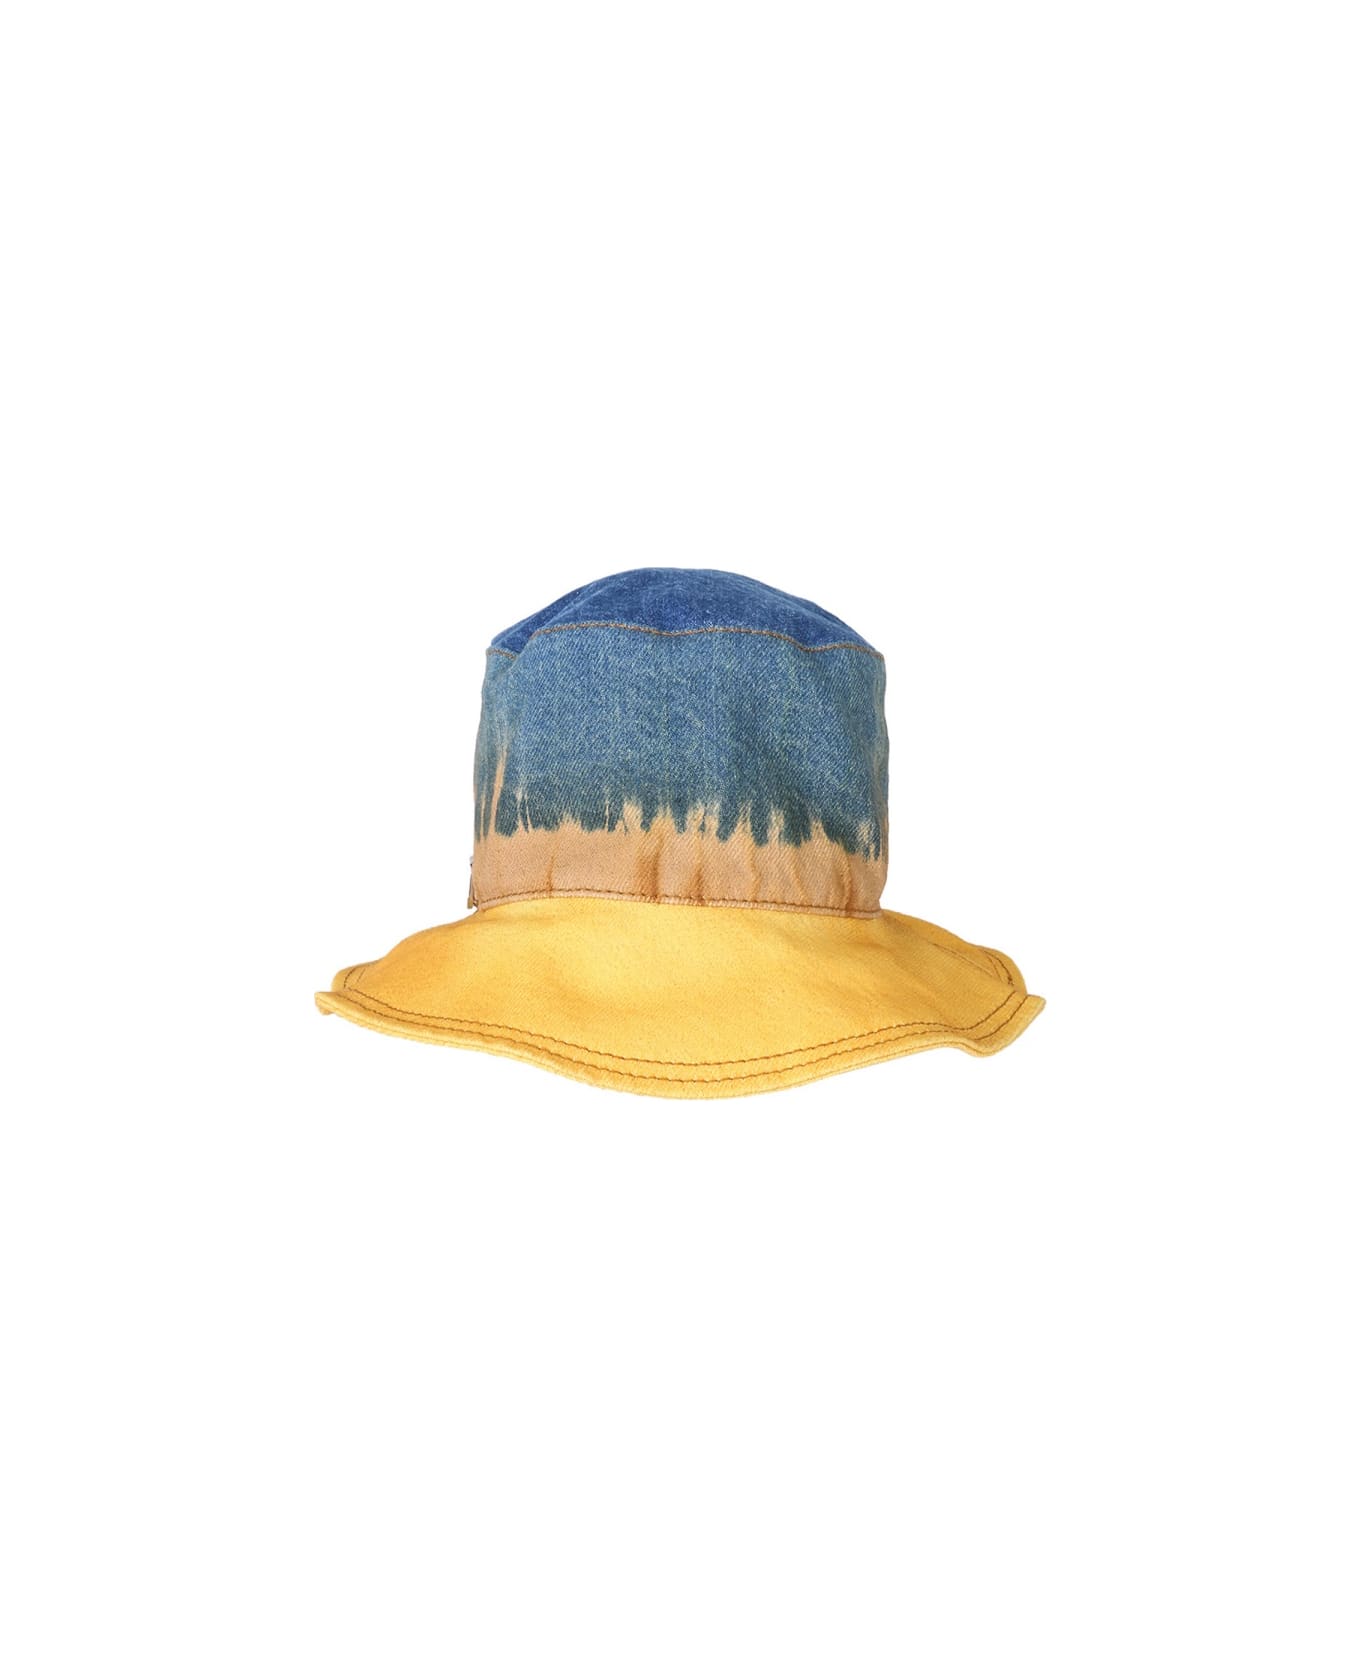 Alberta Ferretti Bucket Hat With Tie Dye Print - MULTICOLOUR